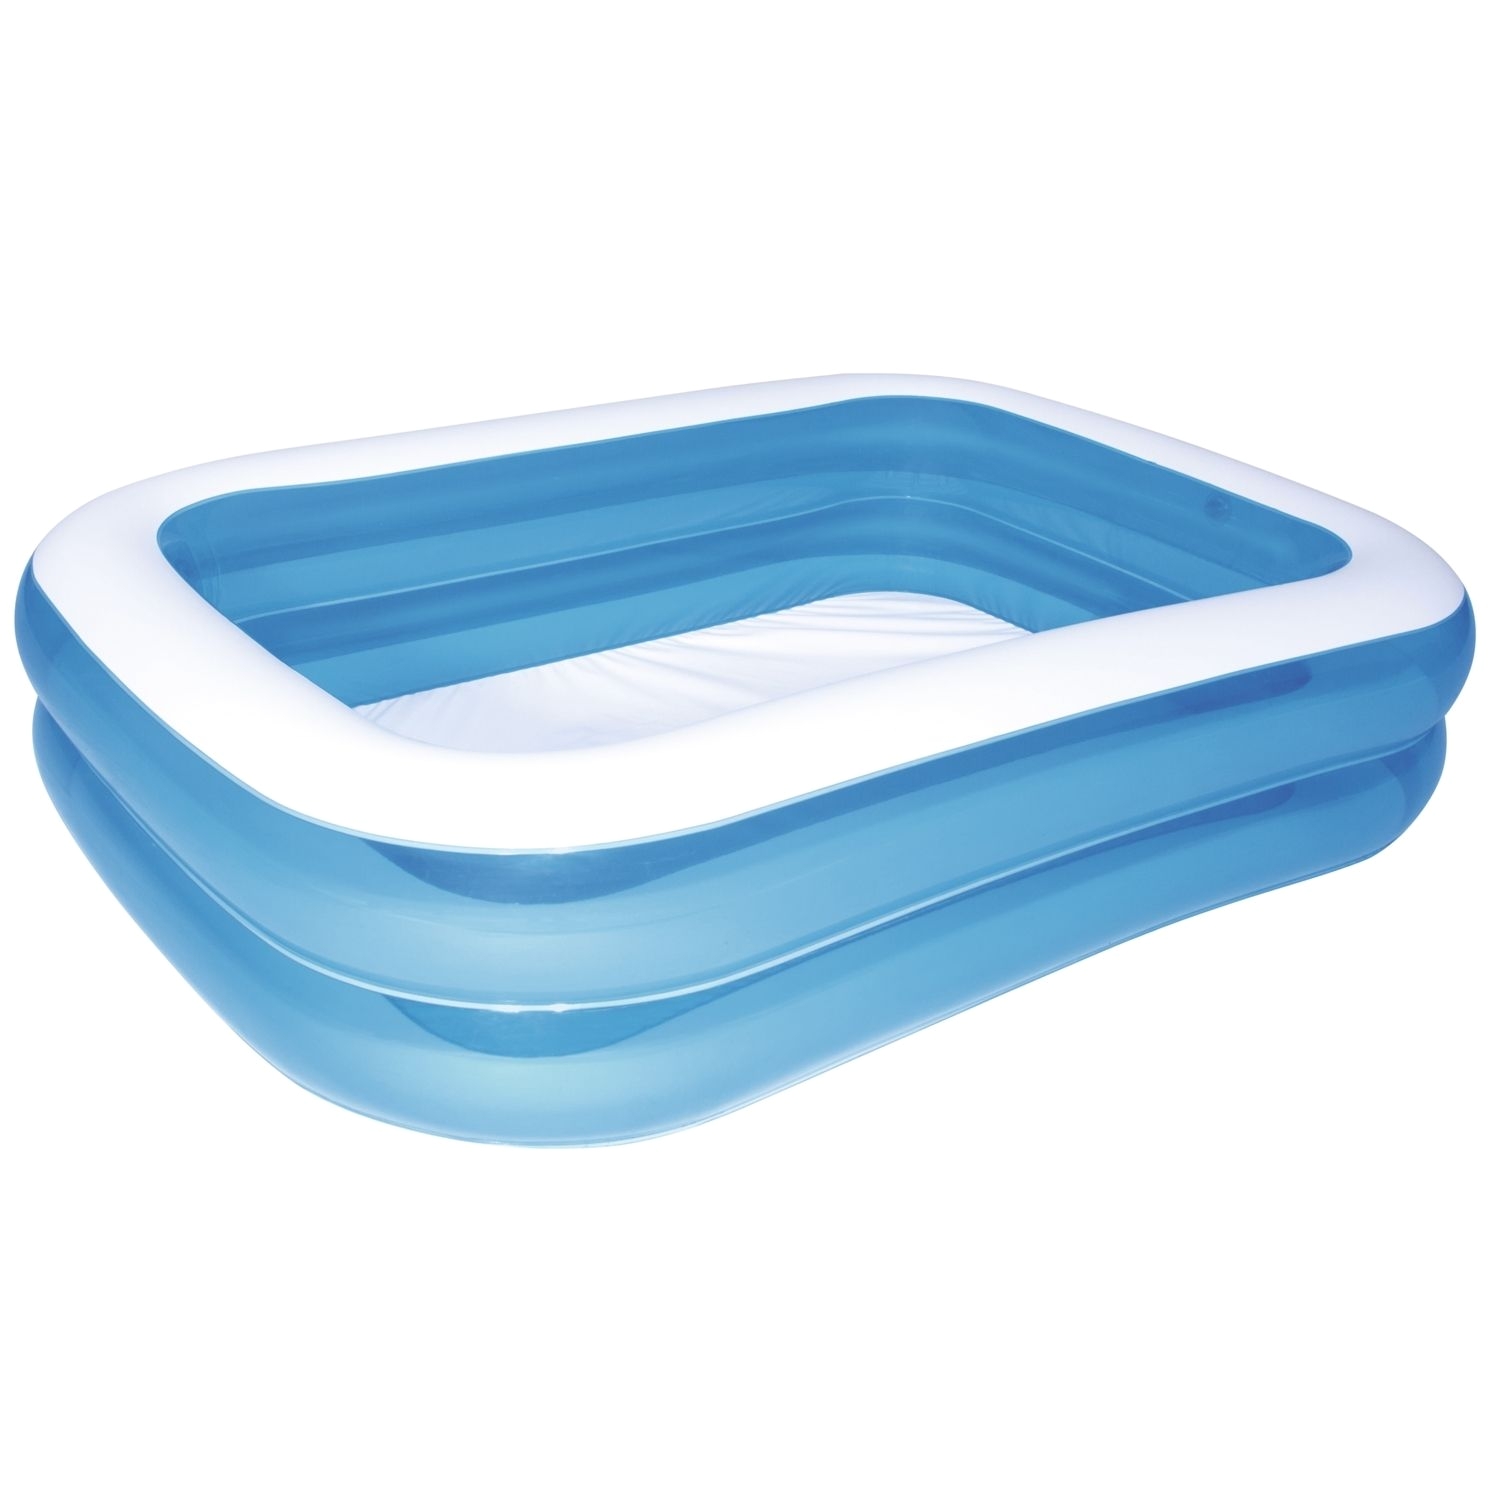 blue rectangular family pool